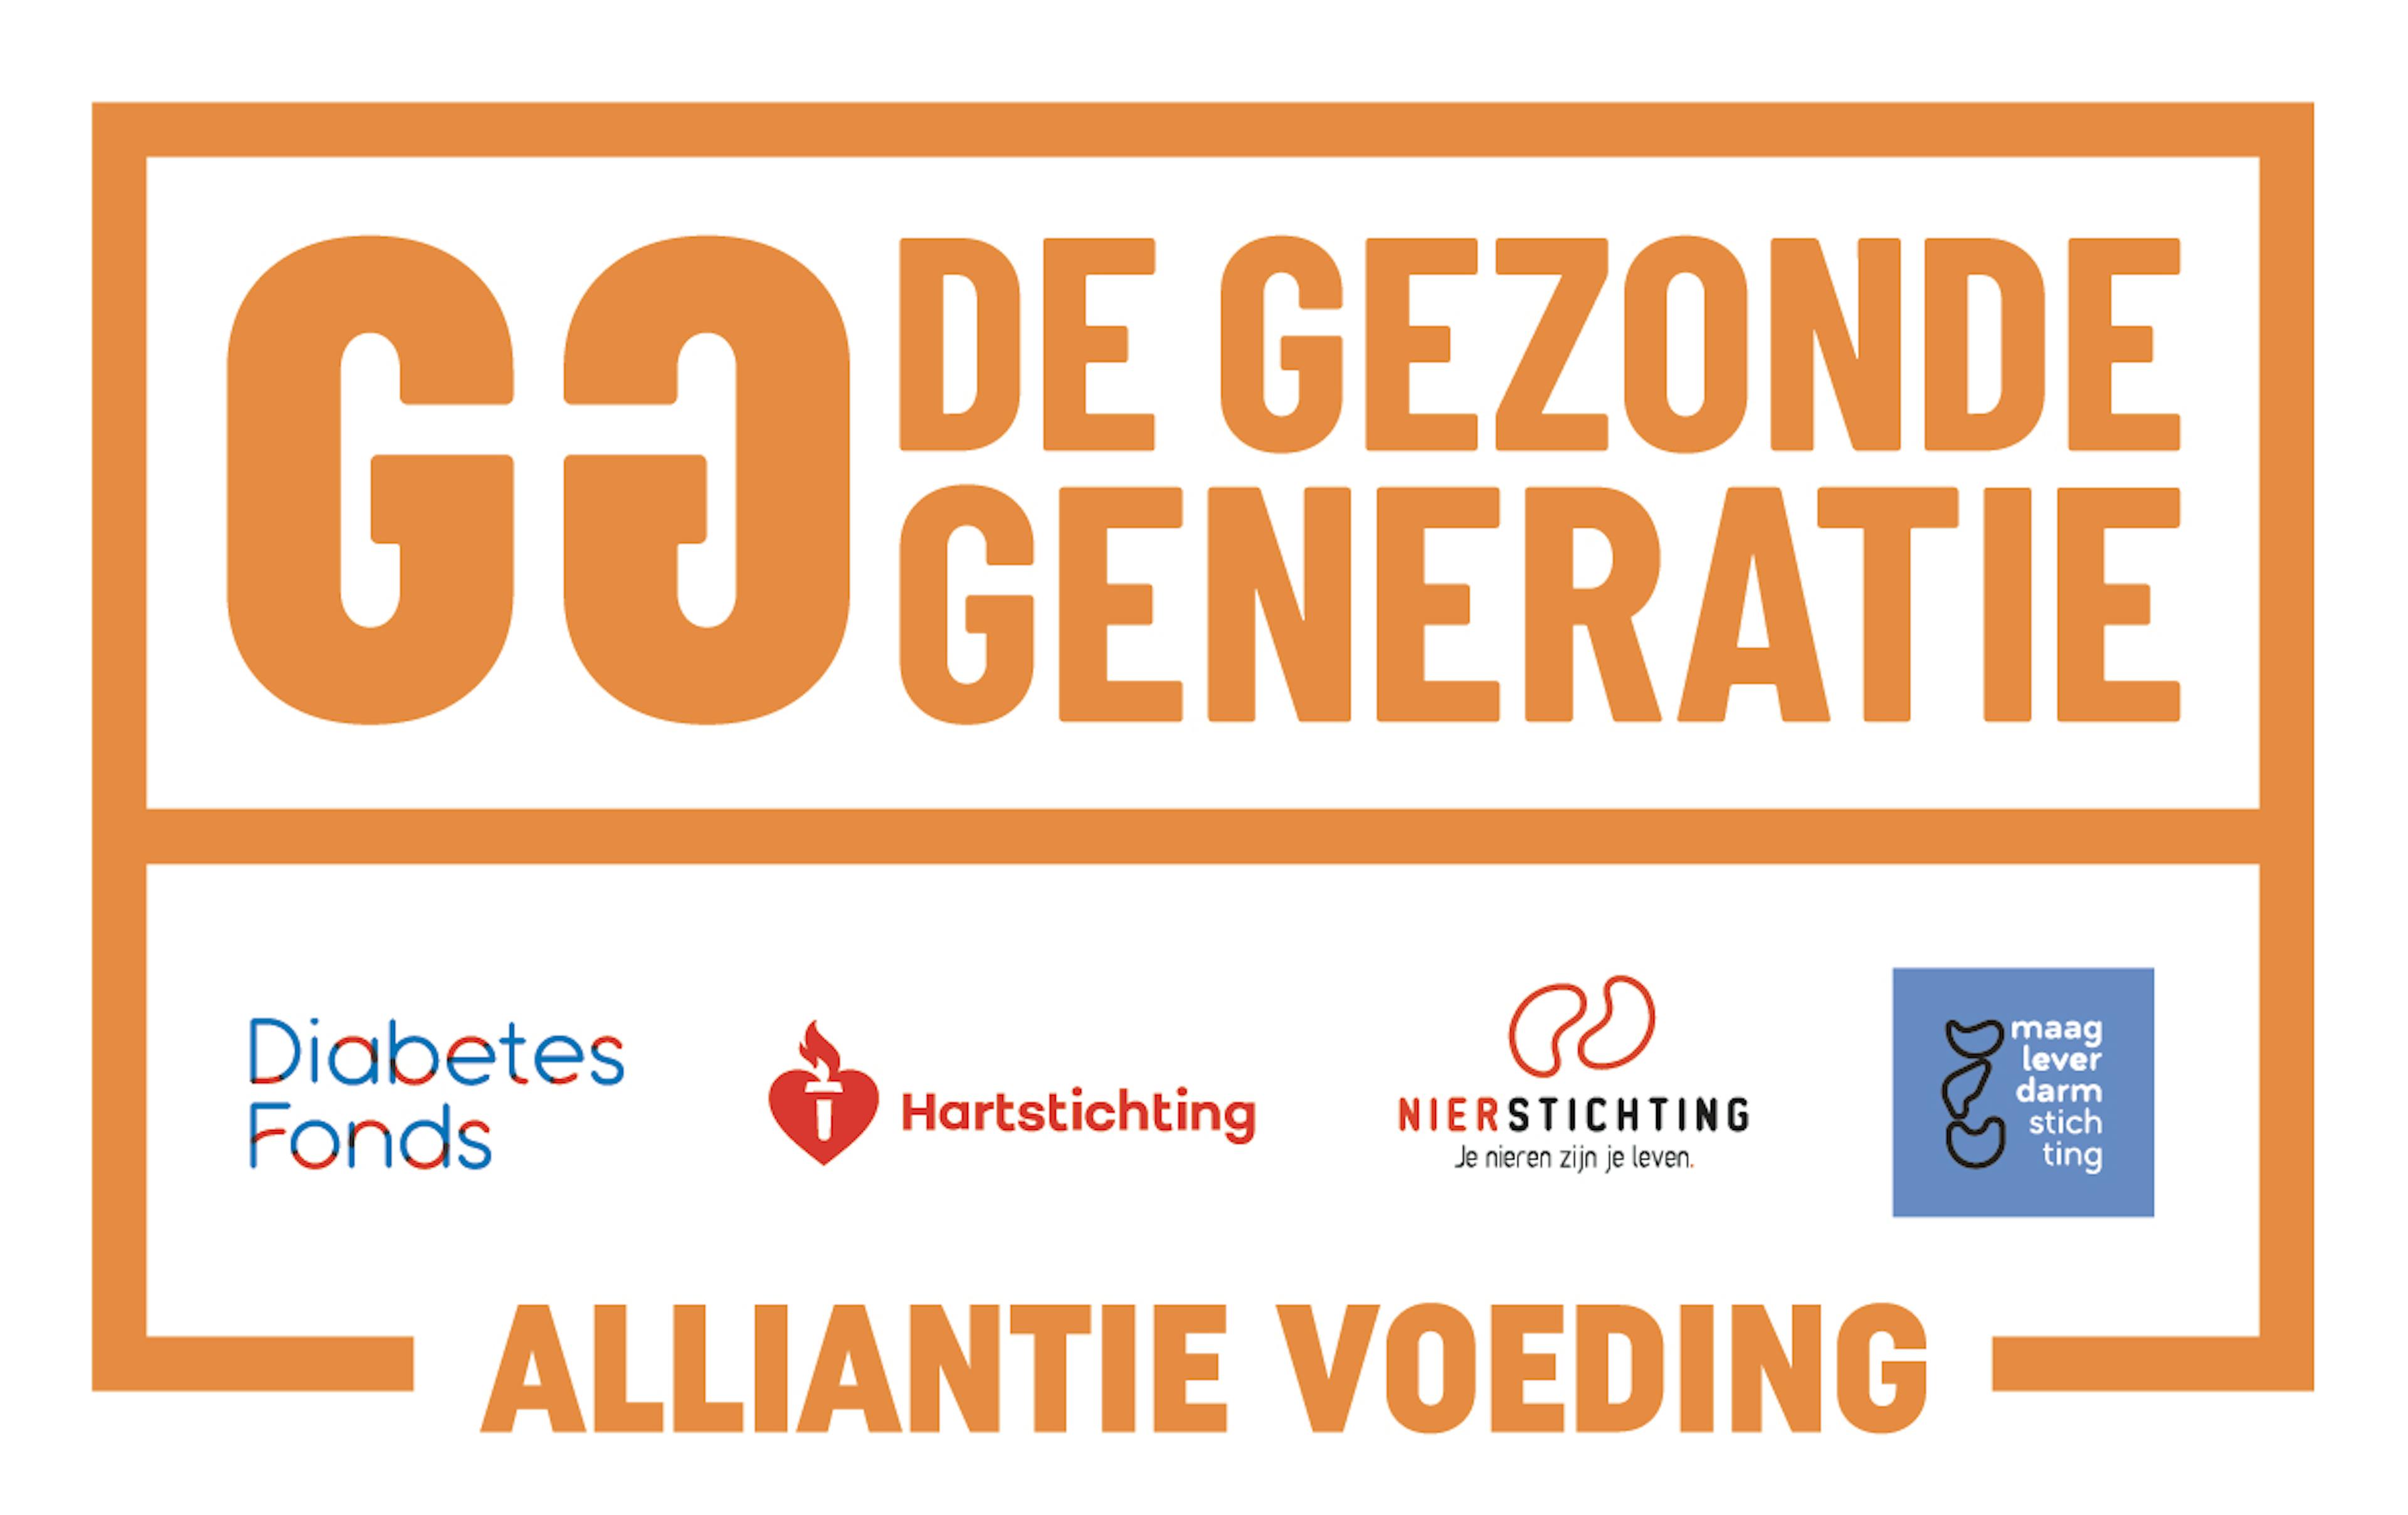 Logo Alliantie Voeding voor de Gezonde Generatie